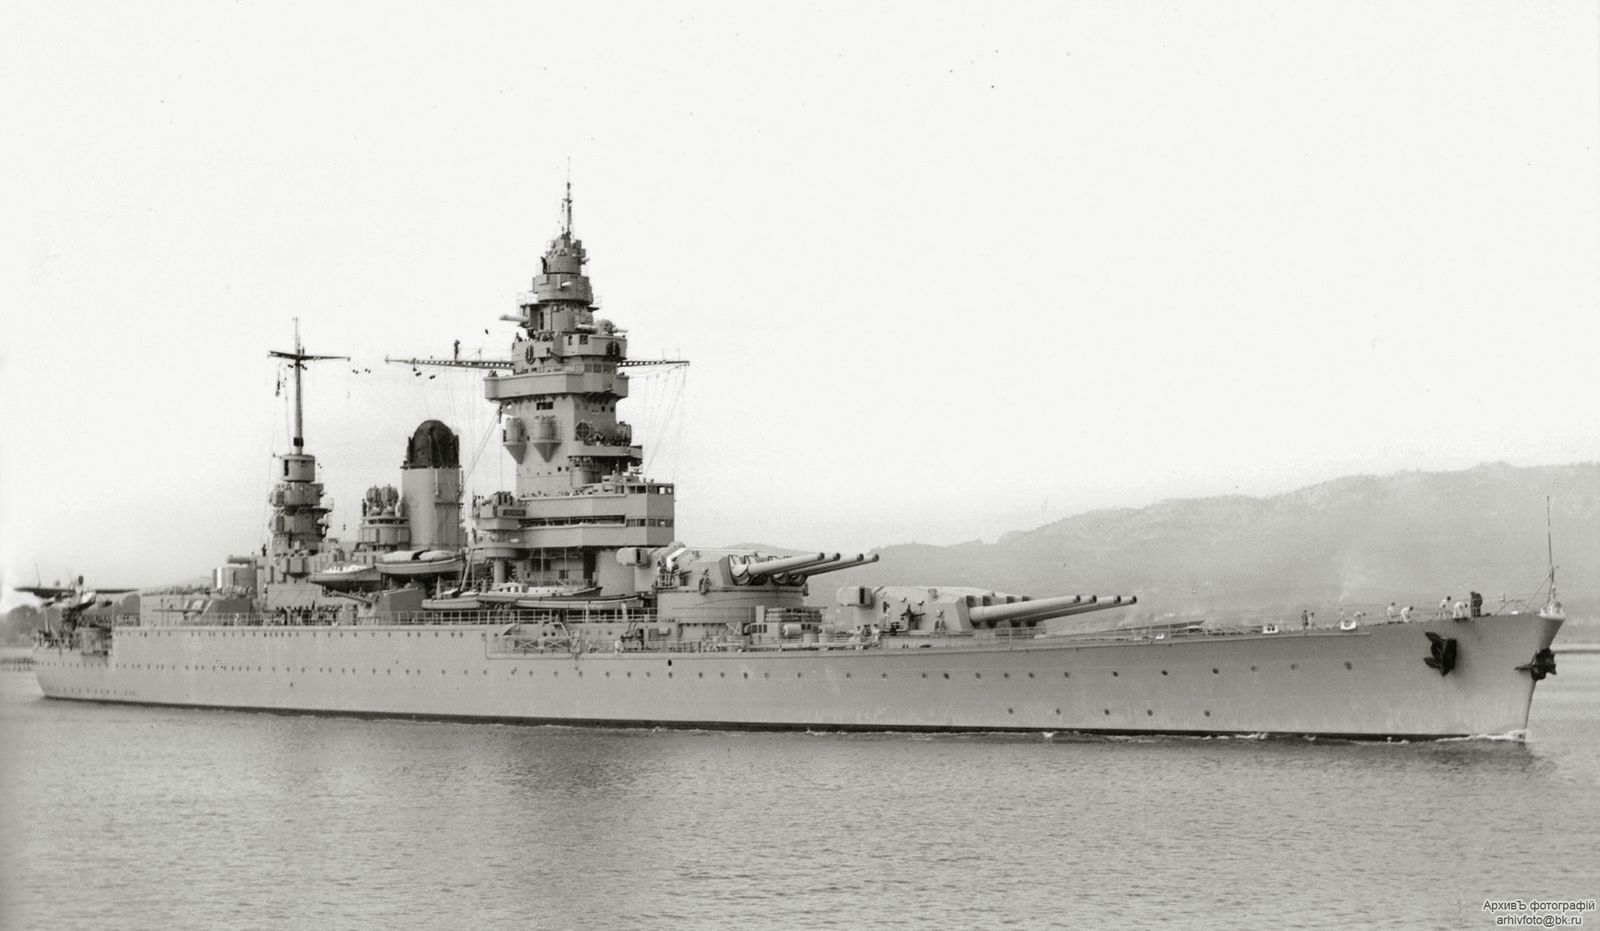 French battleship Strasbourg